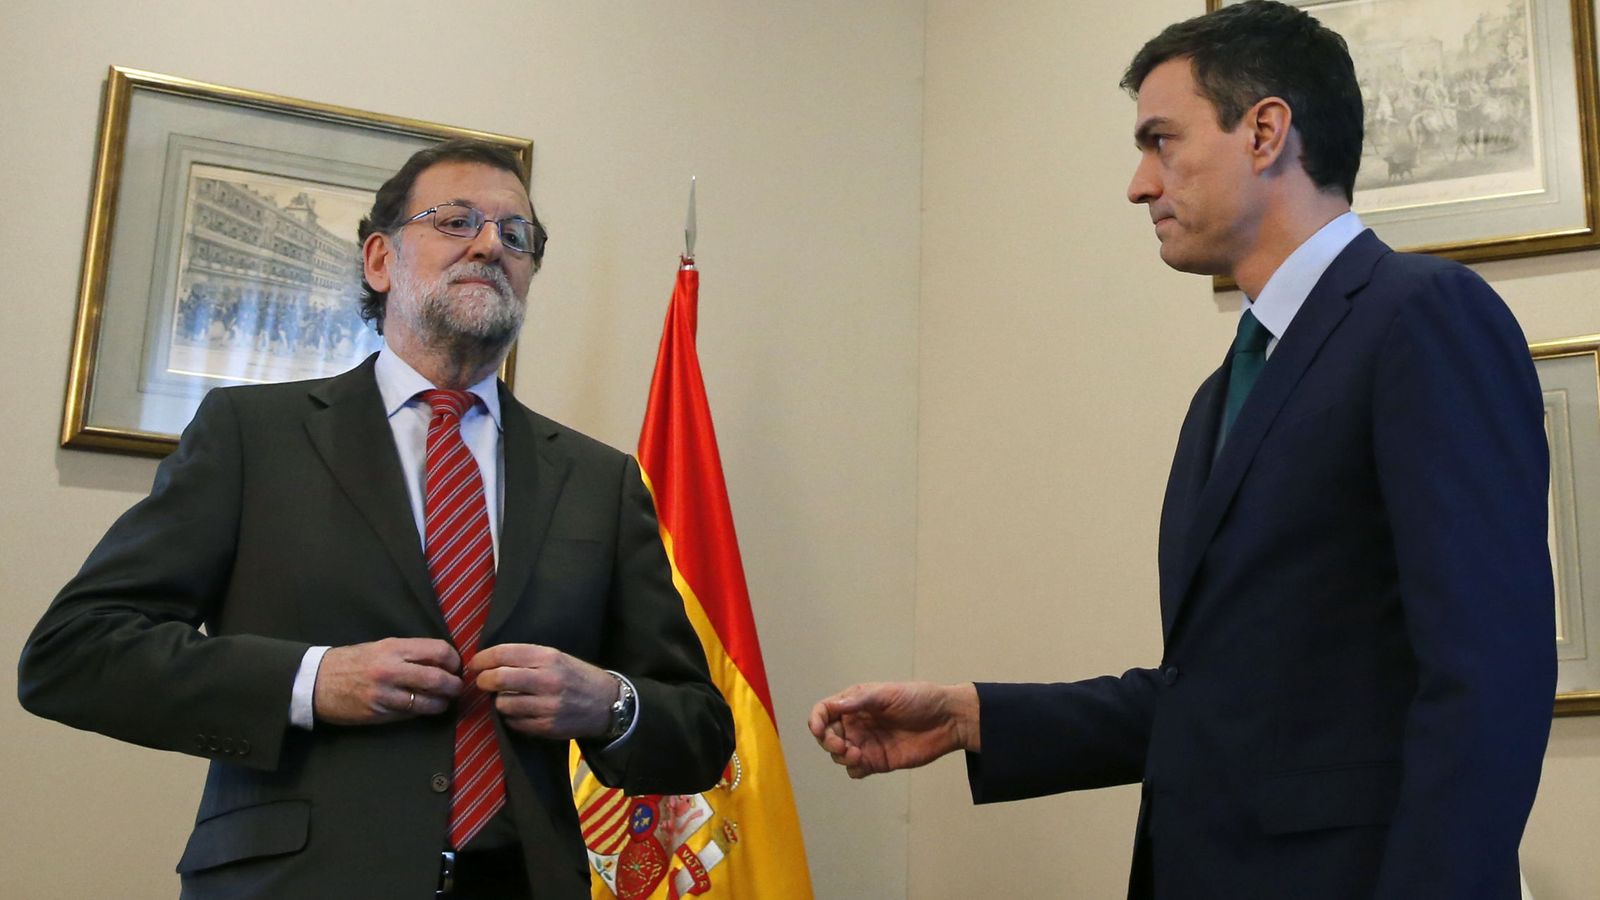 Foto: El presidente del Gobierno en funciones, Mariano Rajoy, y el secretario general del PSOE, Pedro Sánchez, en su última reunión. (Efe)